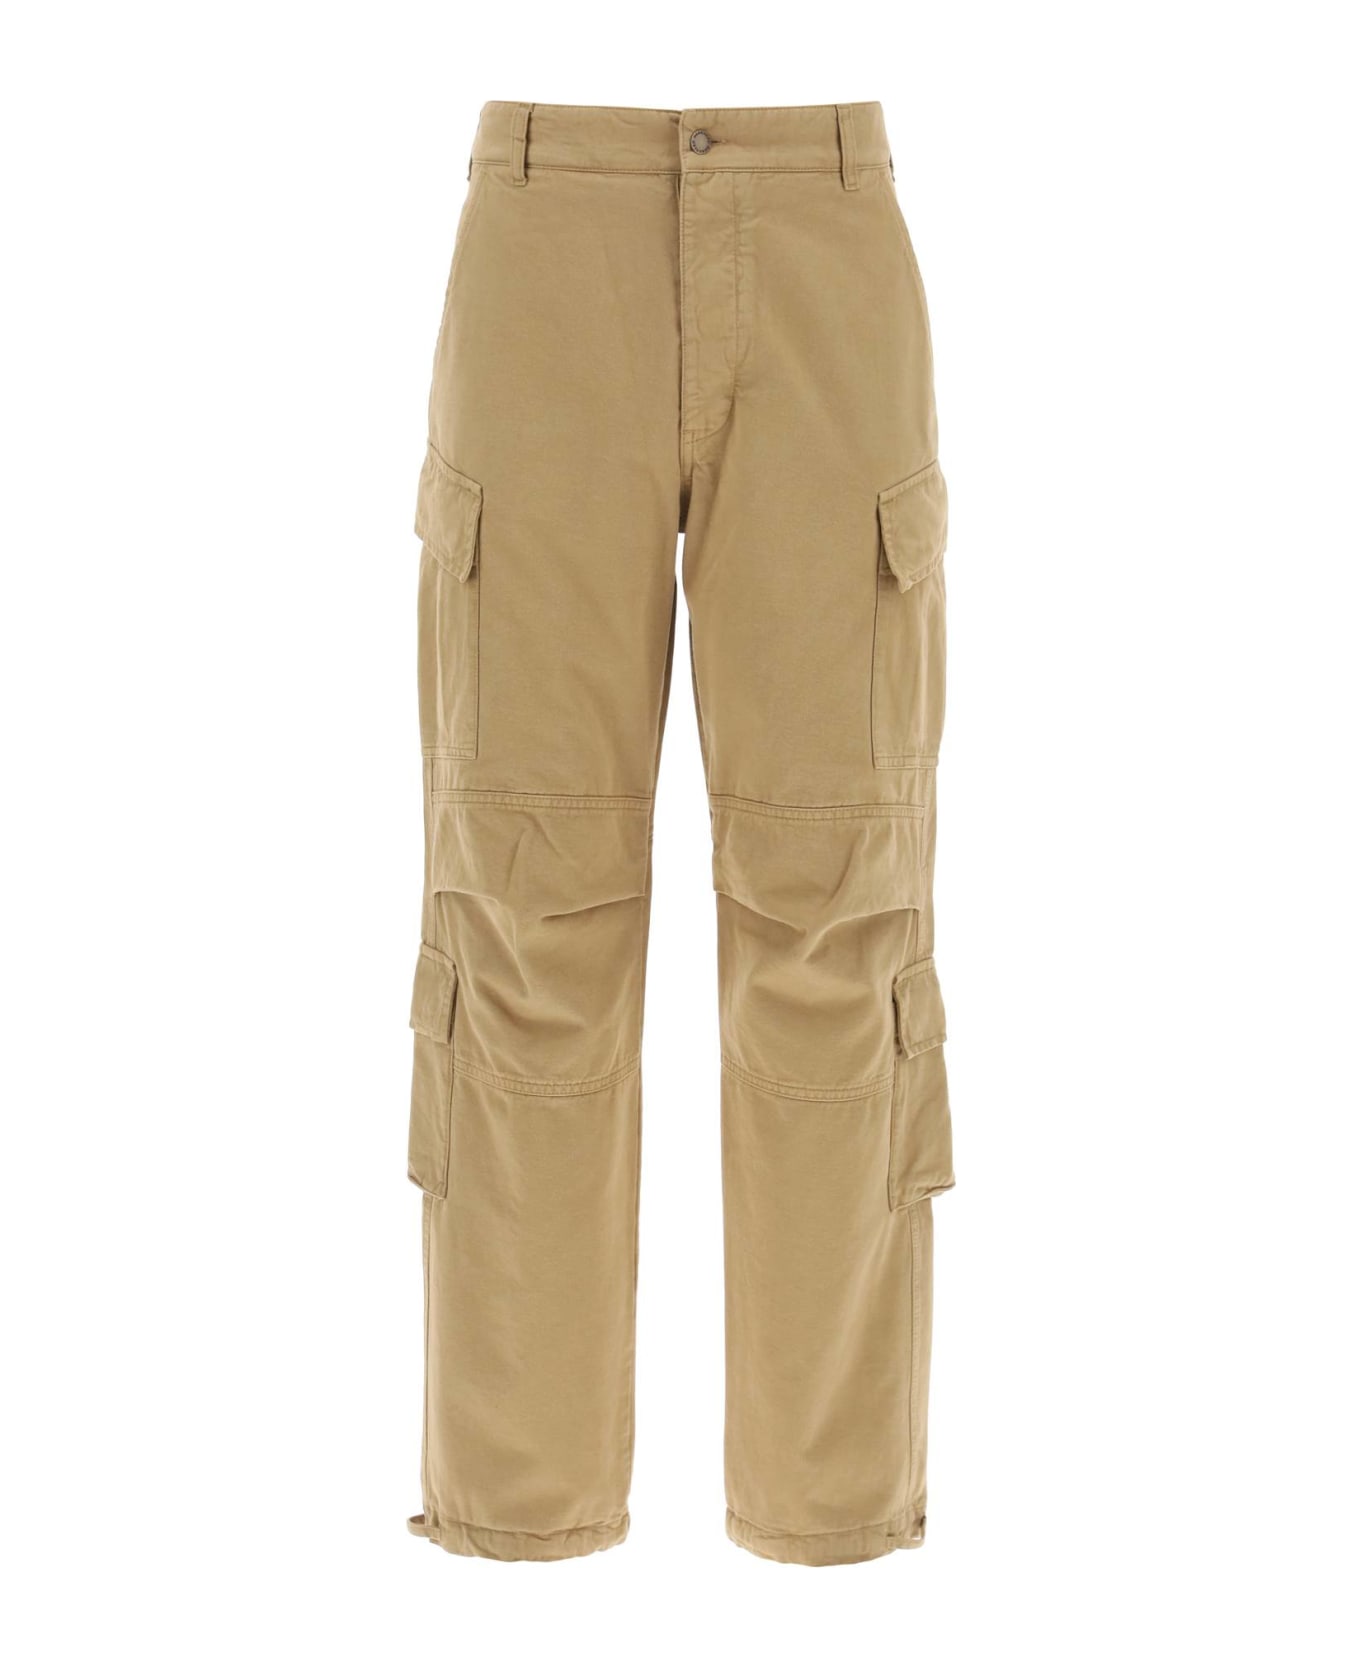 DARKPARK Saint Cotton Cargo Pants - BEIGE (Beige)